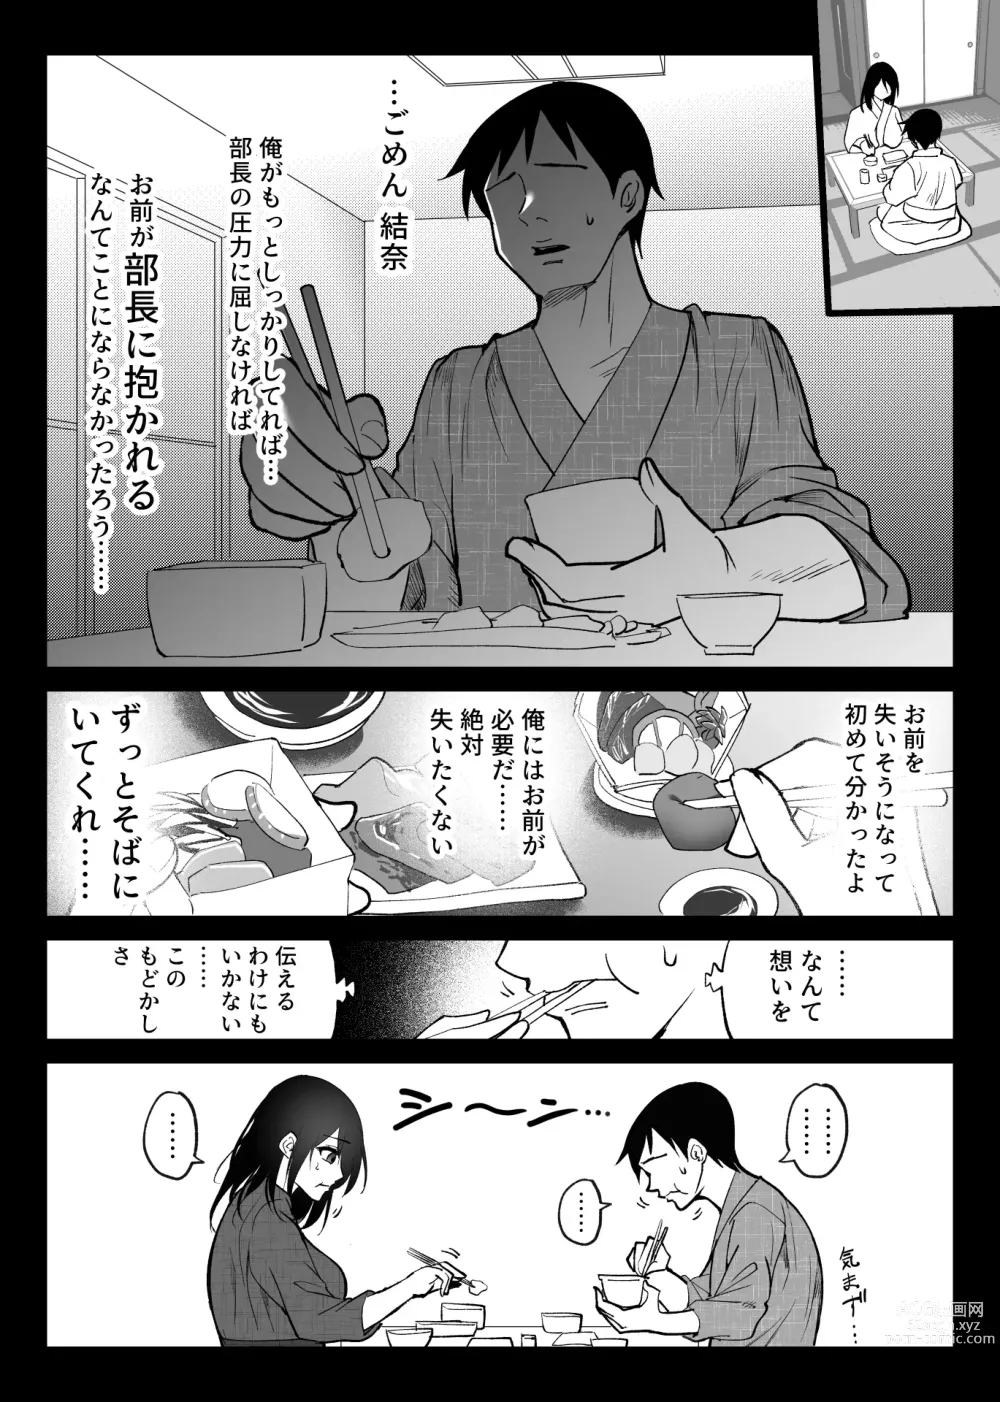 Page 6 of doujinshi Ochiru toki 3 -Ryokan no Kyakushitsu de Otto no Shuushin-Chuu Okonawareru Tanin Koubi-